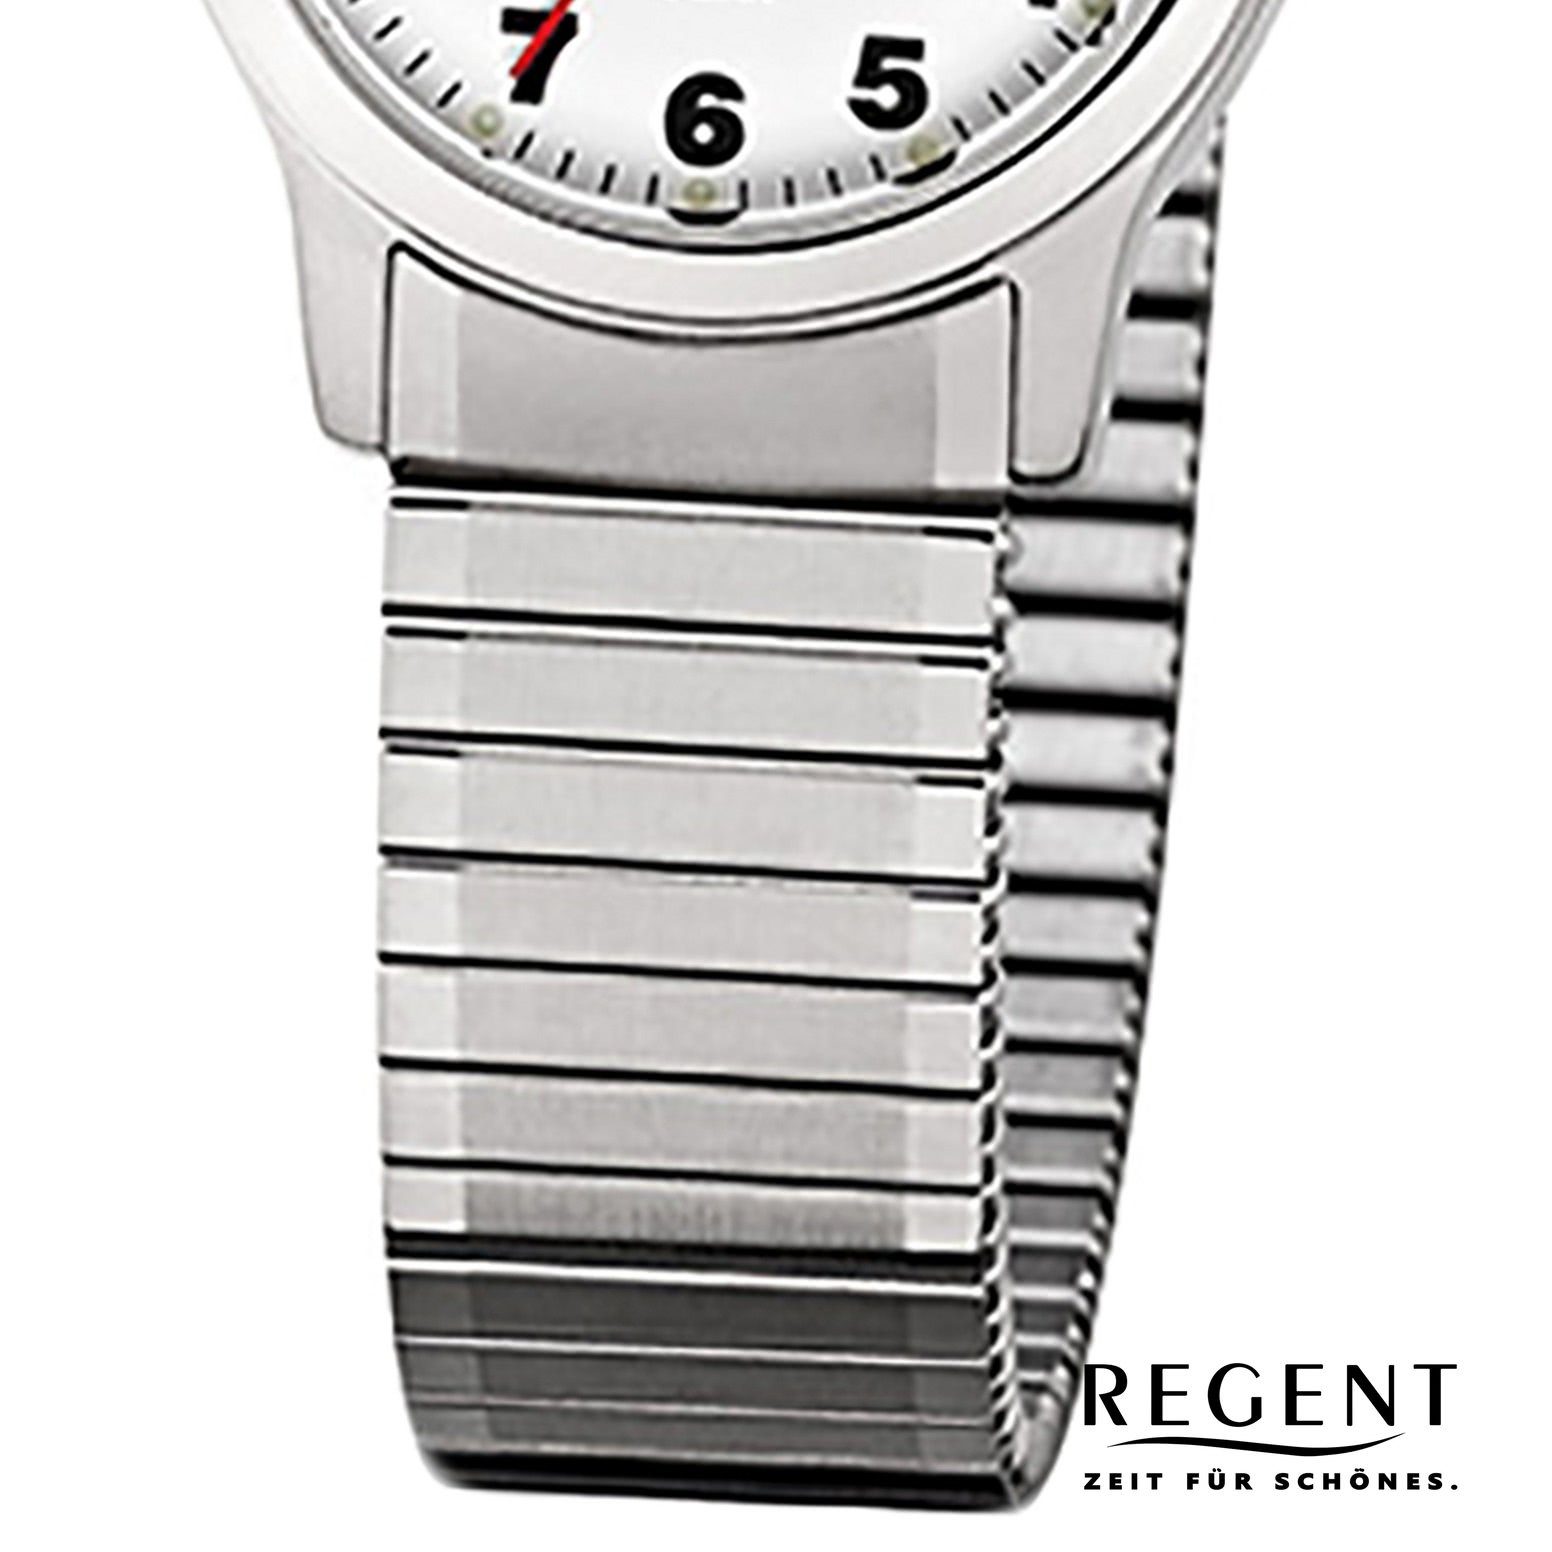 (ca. 28mm), Armbanduhr Damen Regent klein Analog F-898, silber Damen-Armbanduhr Quarzuhr Edelstahlarmband Regent rund,